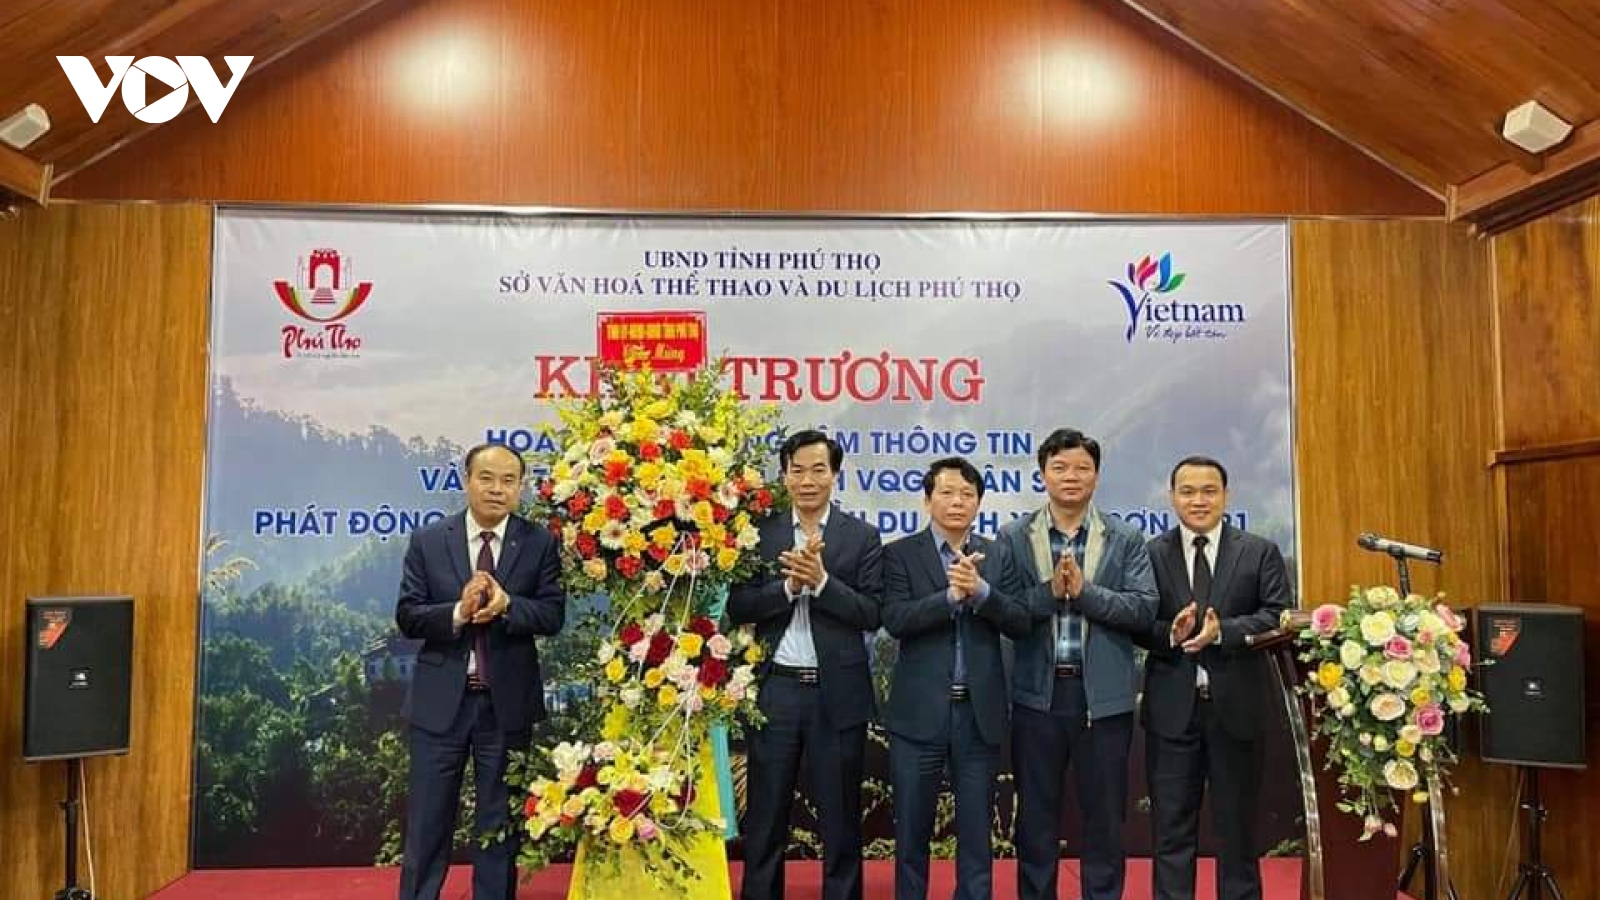 Khai trương Trung tâm Thông tin và Hỗ trợ du khách tại VQG Xuân Sơn (Phú Thọ)